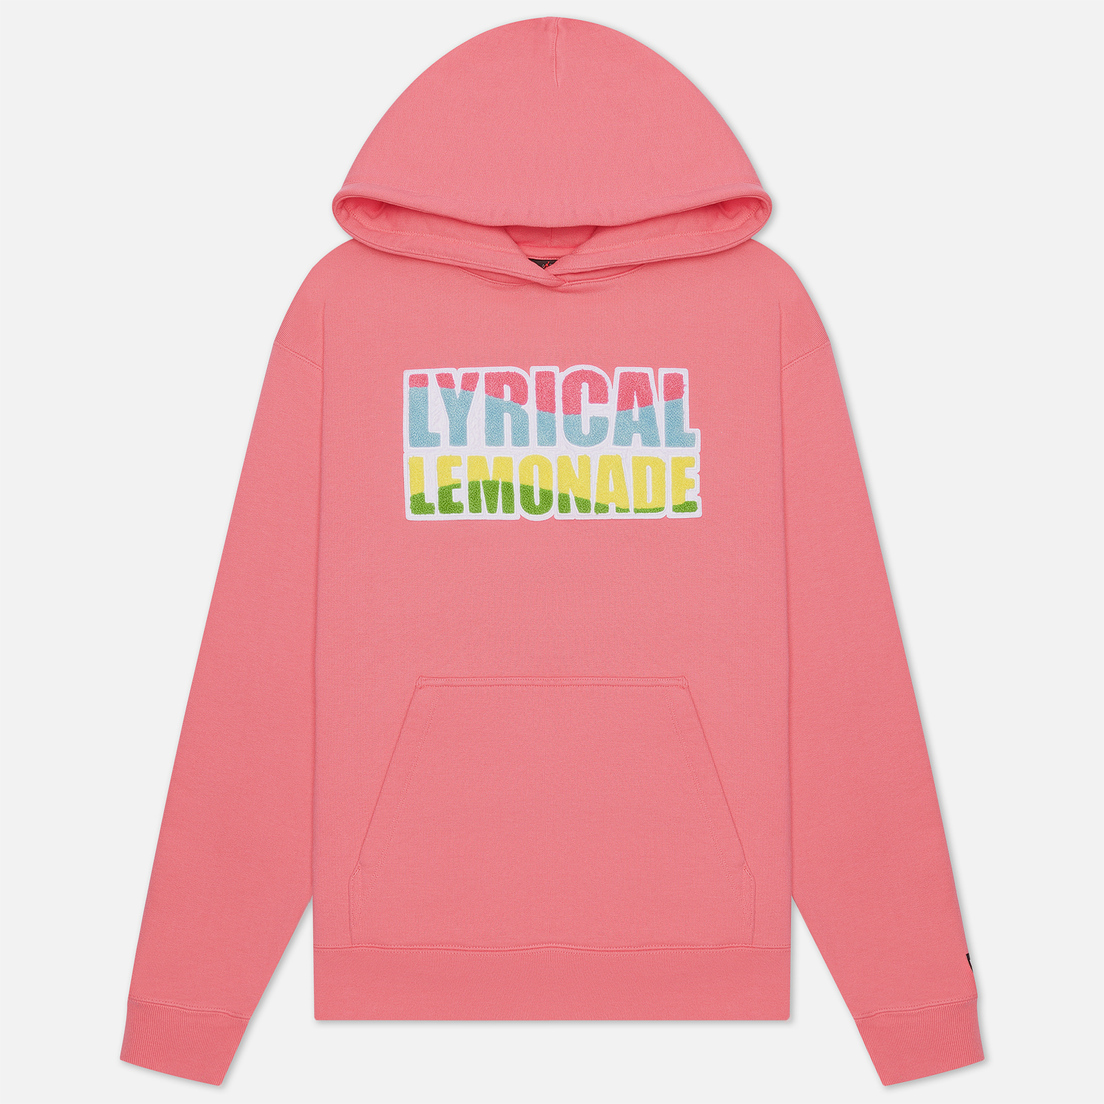 lyrical lemonade nike hoodie